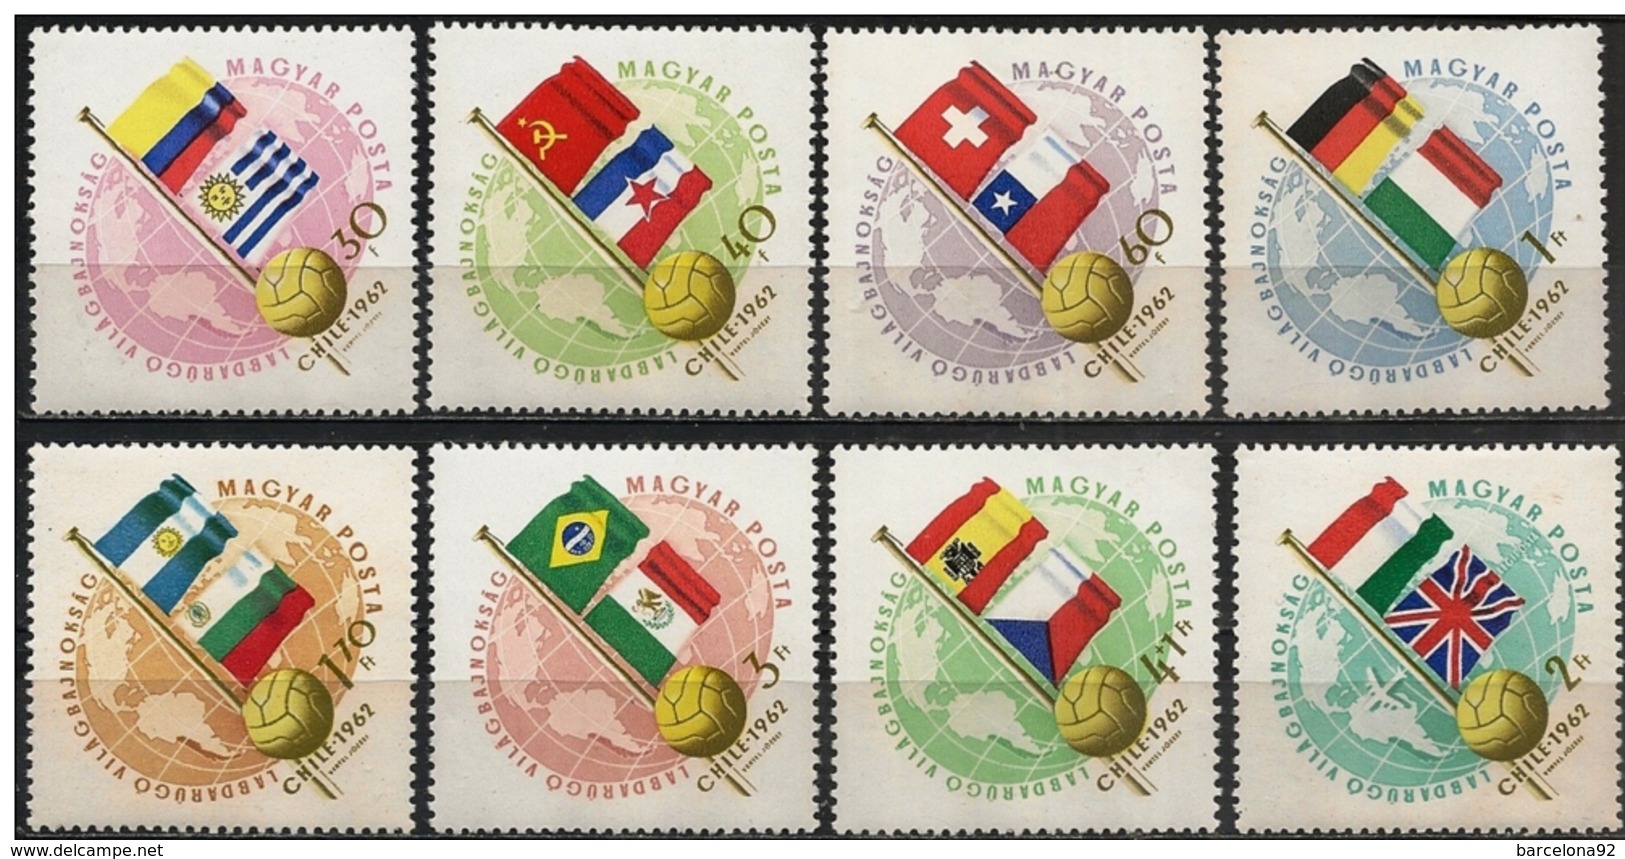 Hungria - Mundiales Chile 1962 - 1505/11 + A/231 - Nuevo - 1962 – Cile